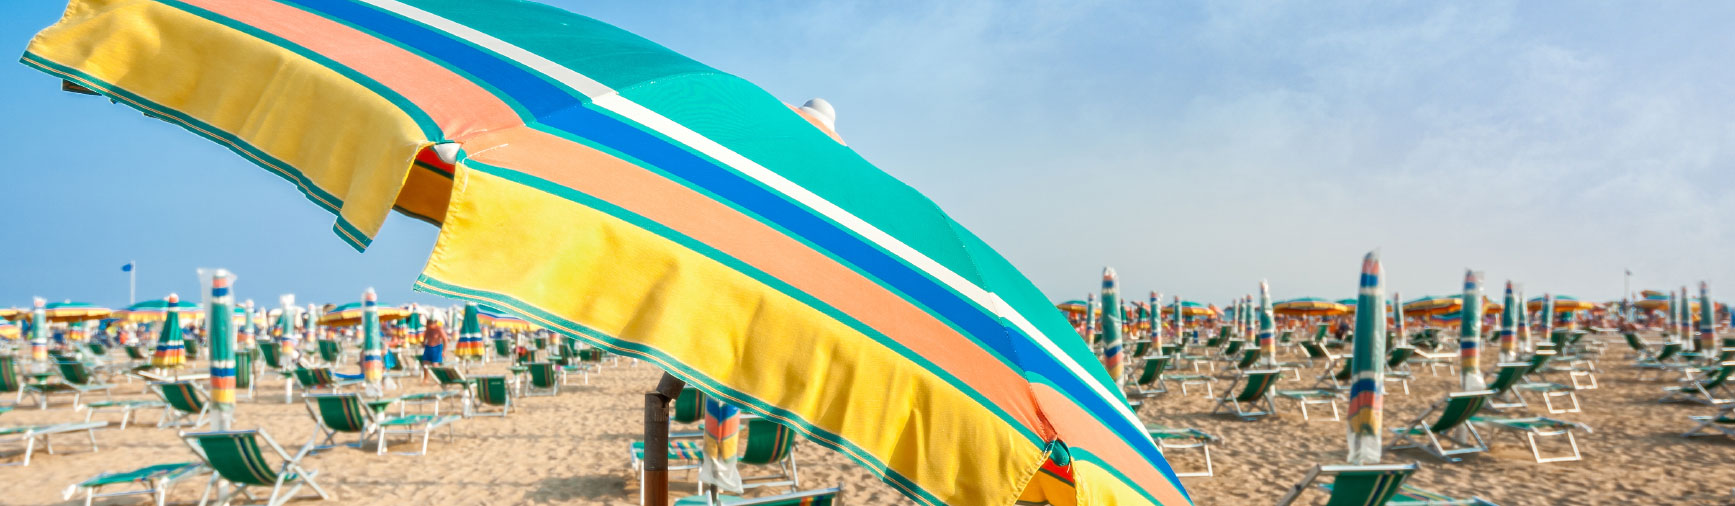 Spiaggia 4.0: prenotazione ombrellone da app